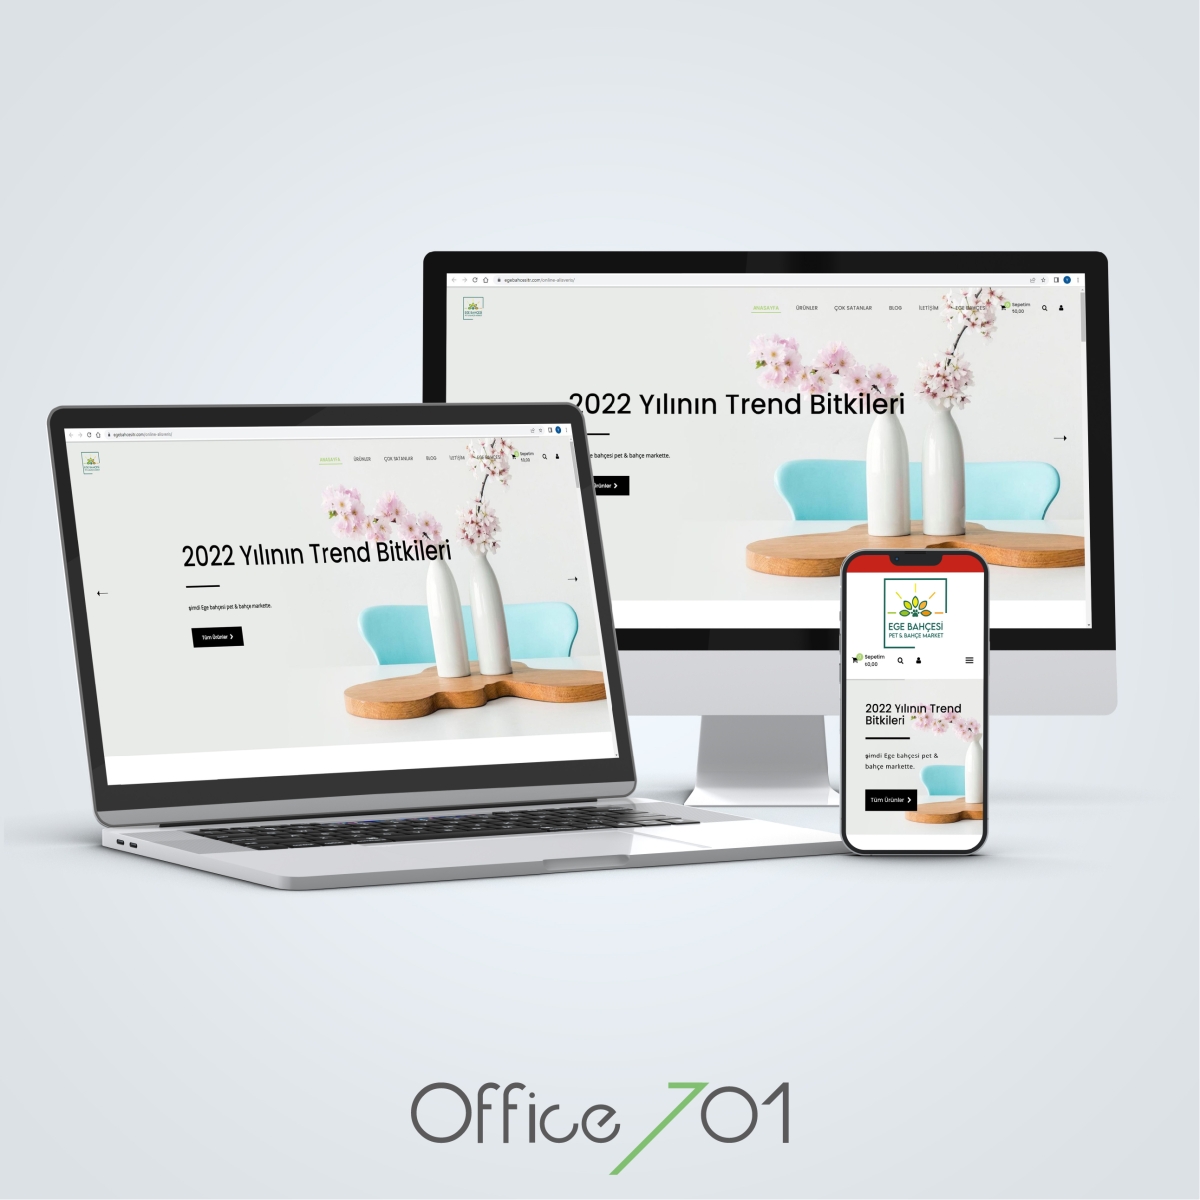 Office701 | Ege Bahçesi E-Ticaret Sitesi